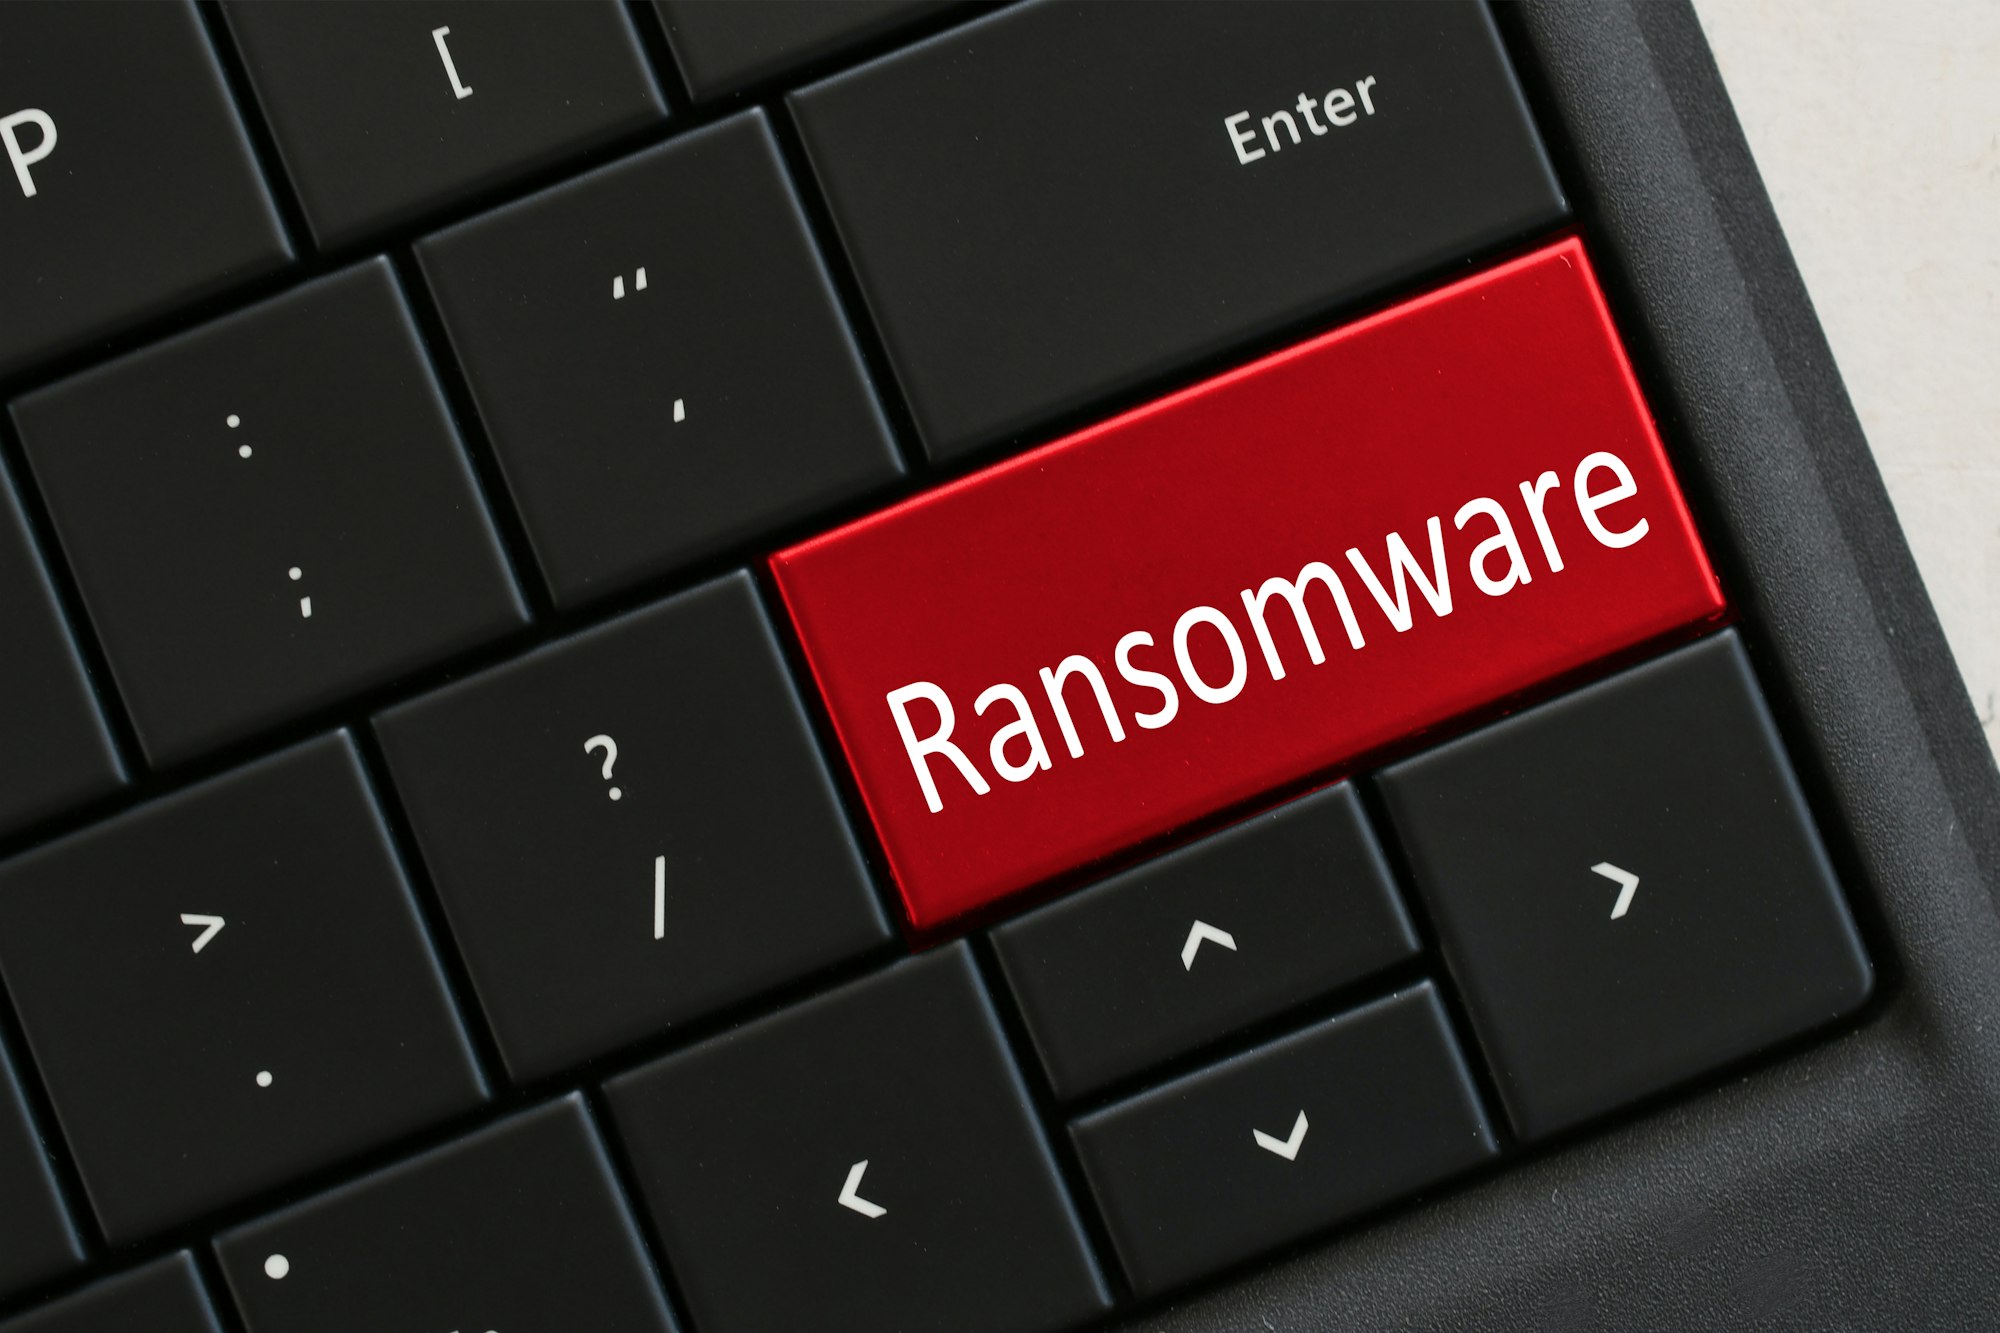 La montée en puissance des négociateurs de ransomware : une tendance inquiétante